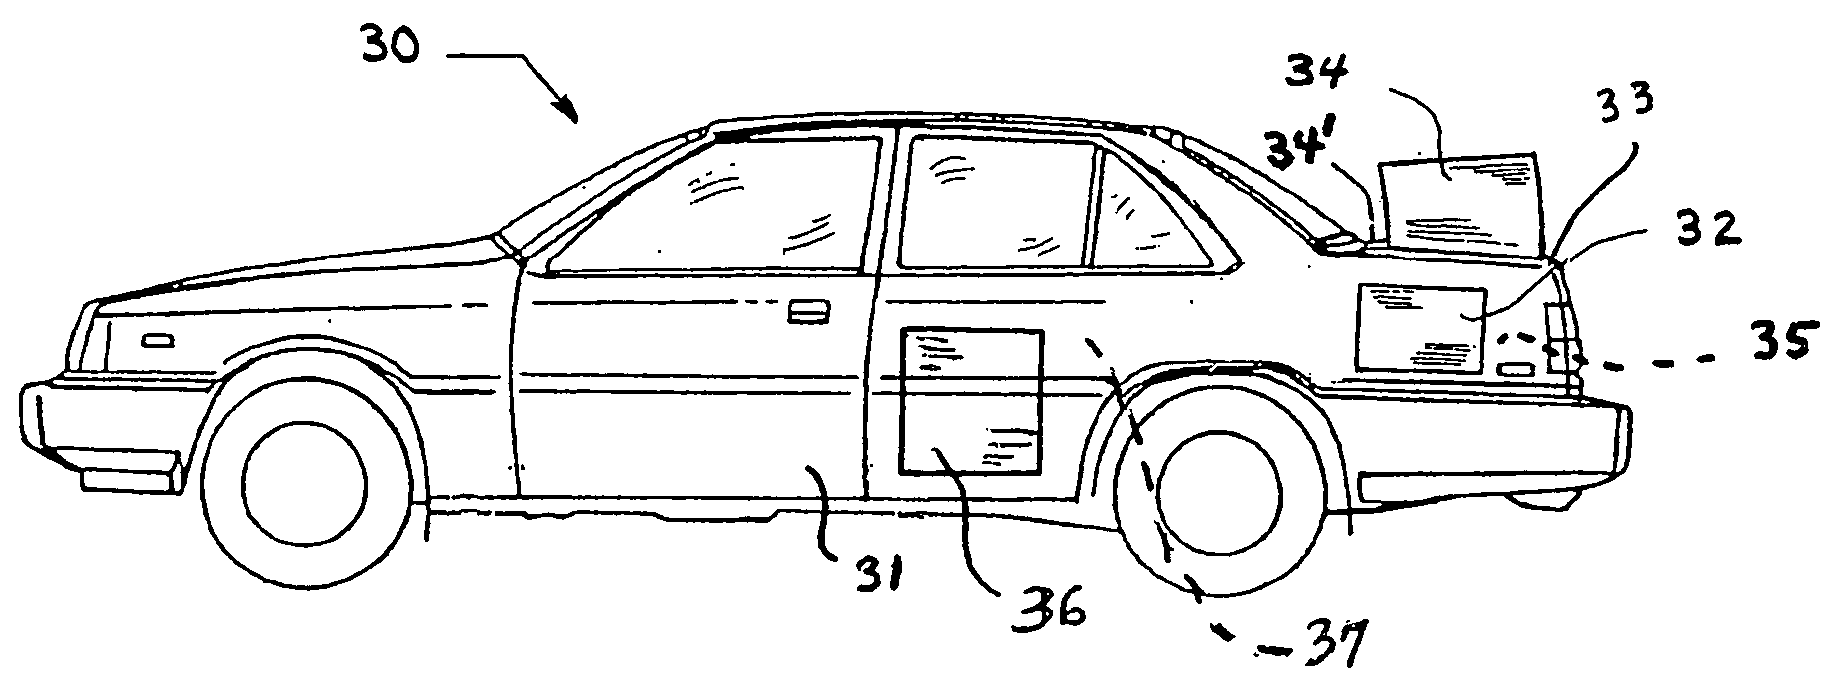 Vehicle openings